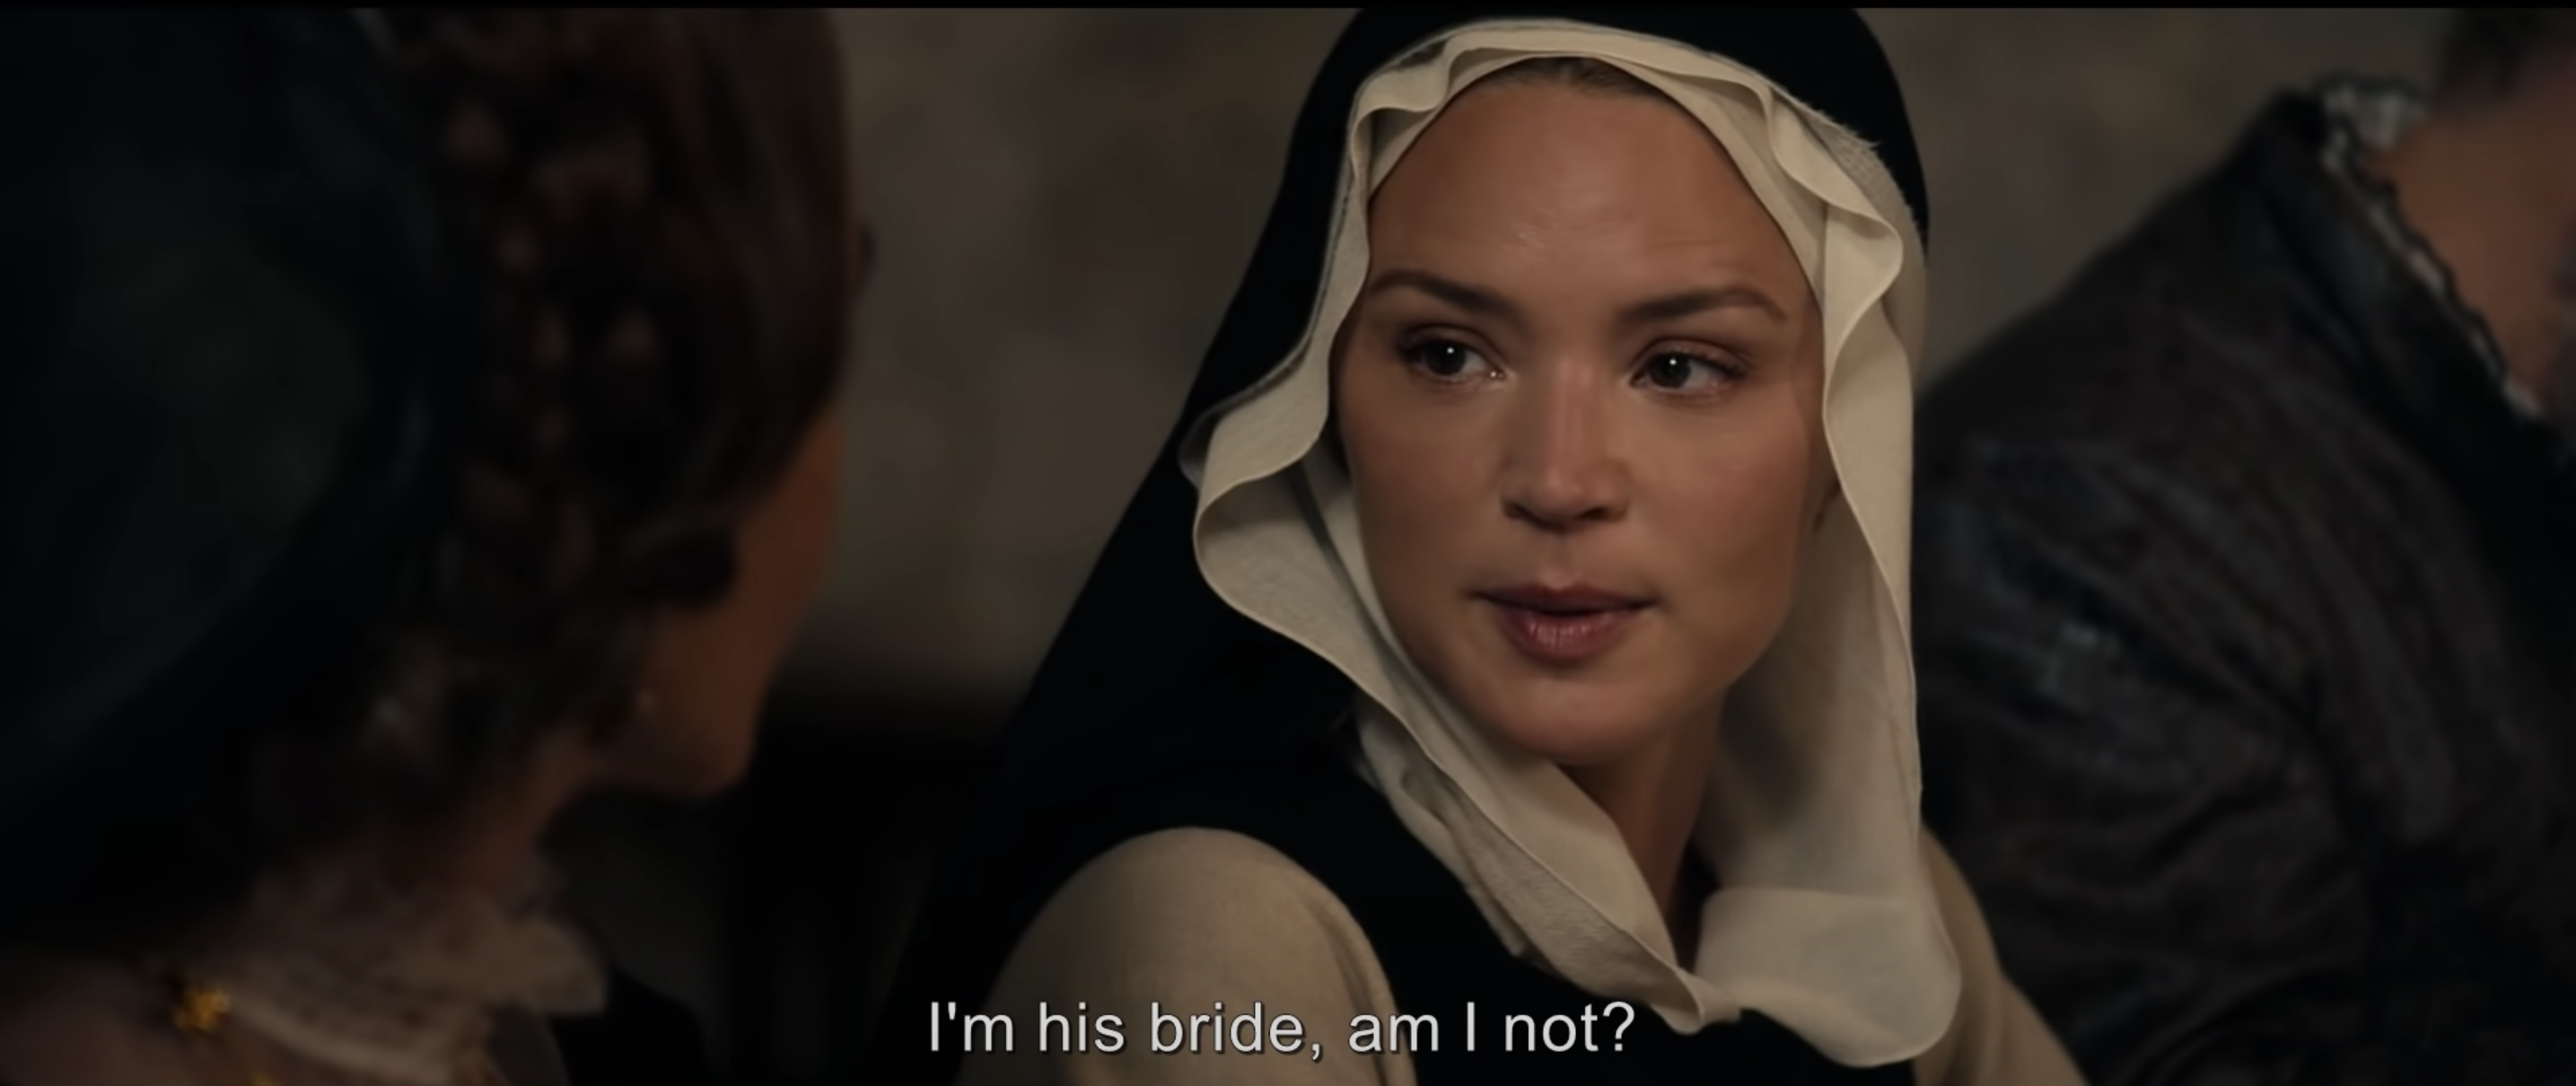 A woman wearing a nun&#x27;s habit asks &quot;I&#x27;m his bride, am I not?&quot;